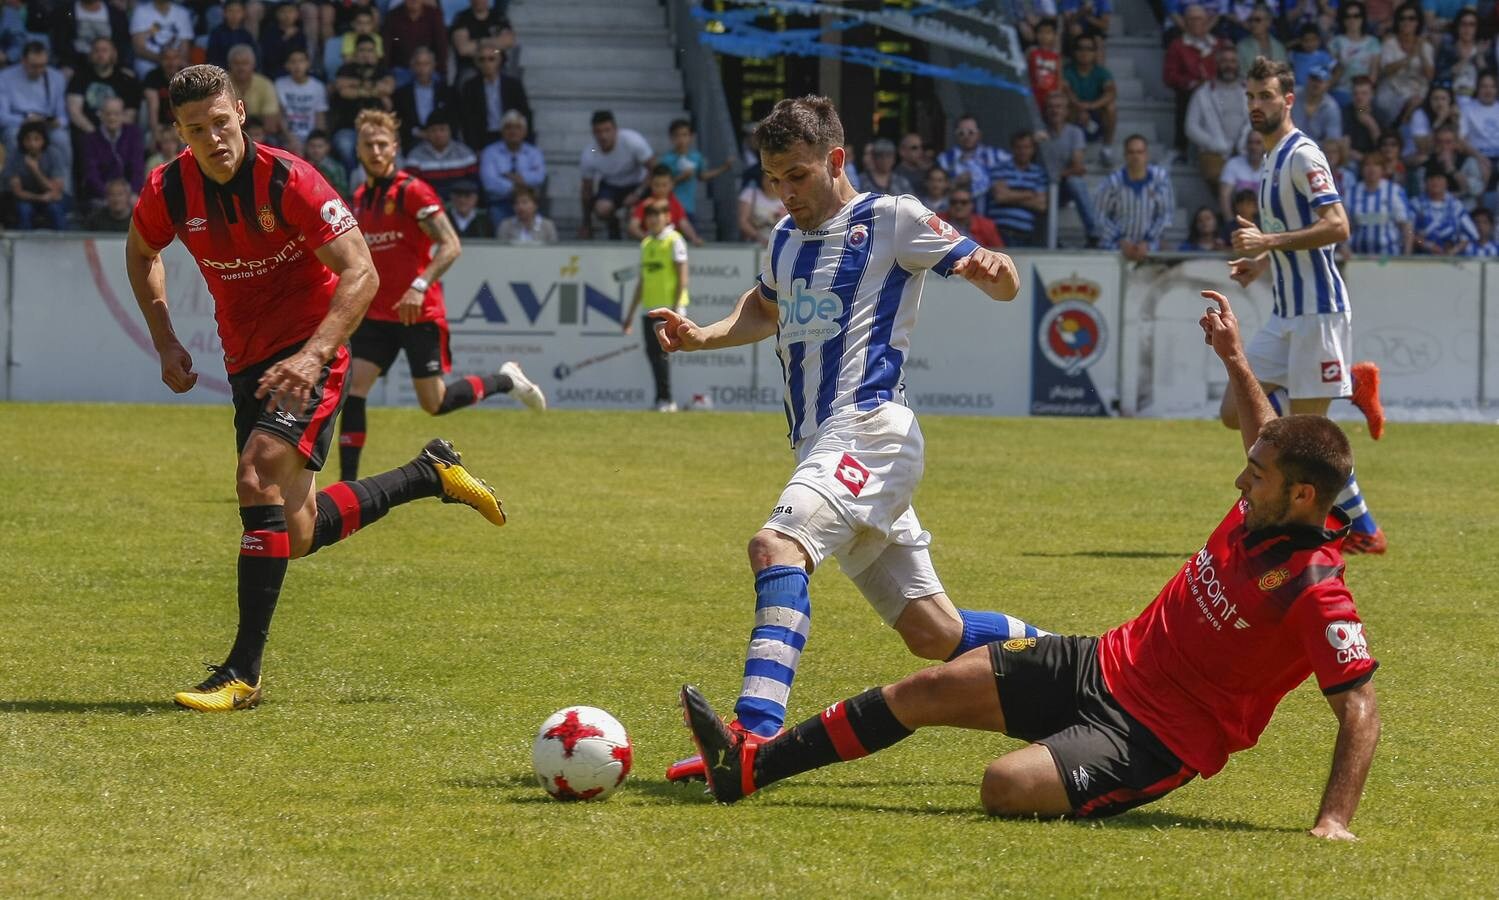 El equipo torrelaveguense jugará la vuelta en Mallorca con tres goles de ventaja | Juanma Barbero, Nacho Rodríguez, en dos ocasiones, y Lucho han sido los goleadores gimnásticos